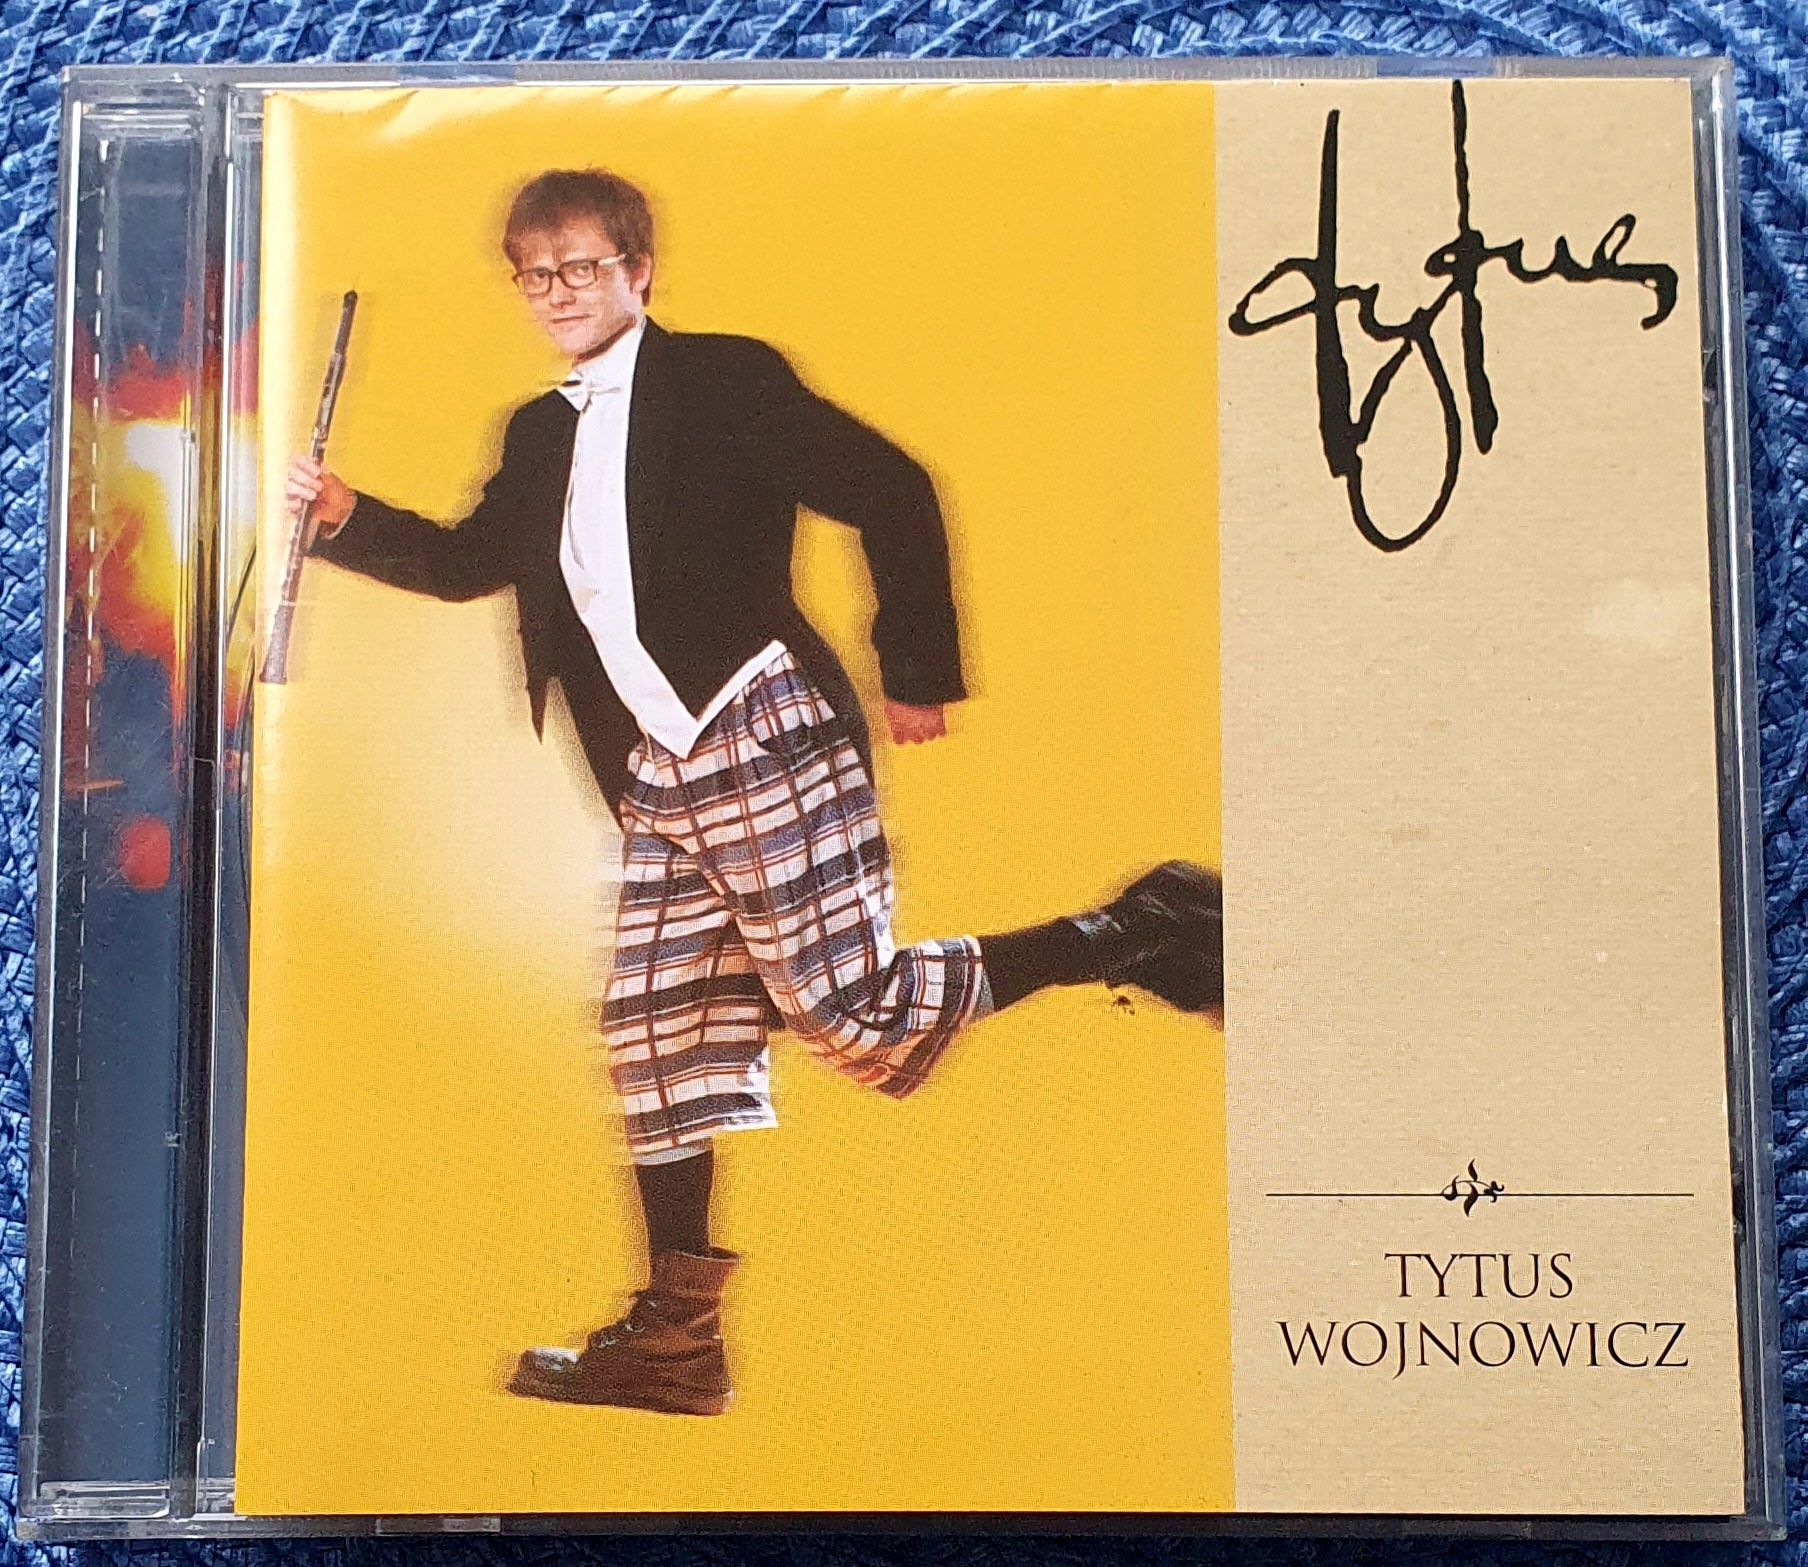 Tytus Wojnowicz - Tytus CD